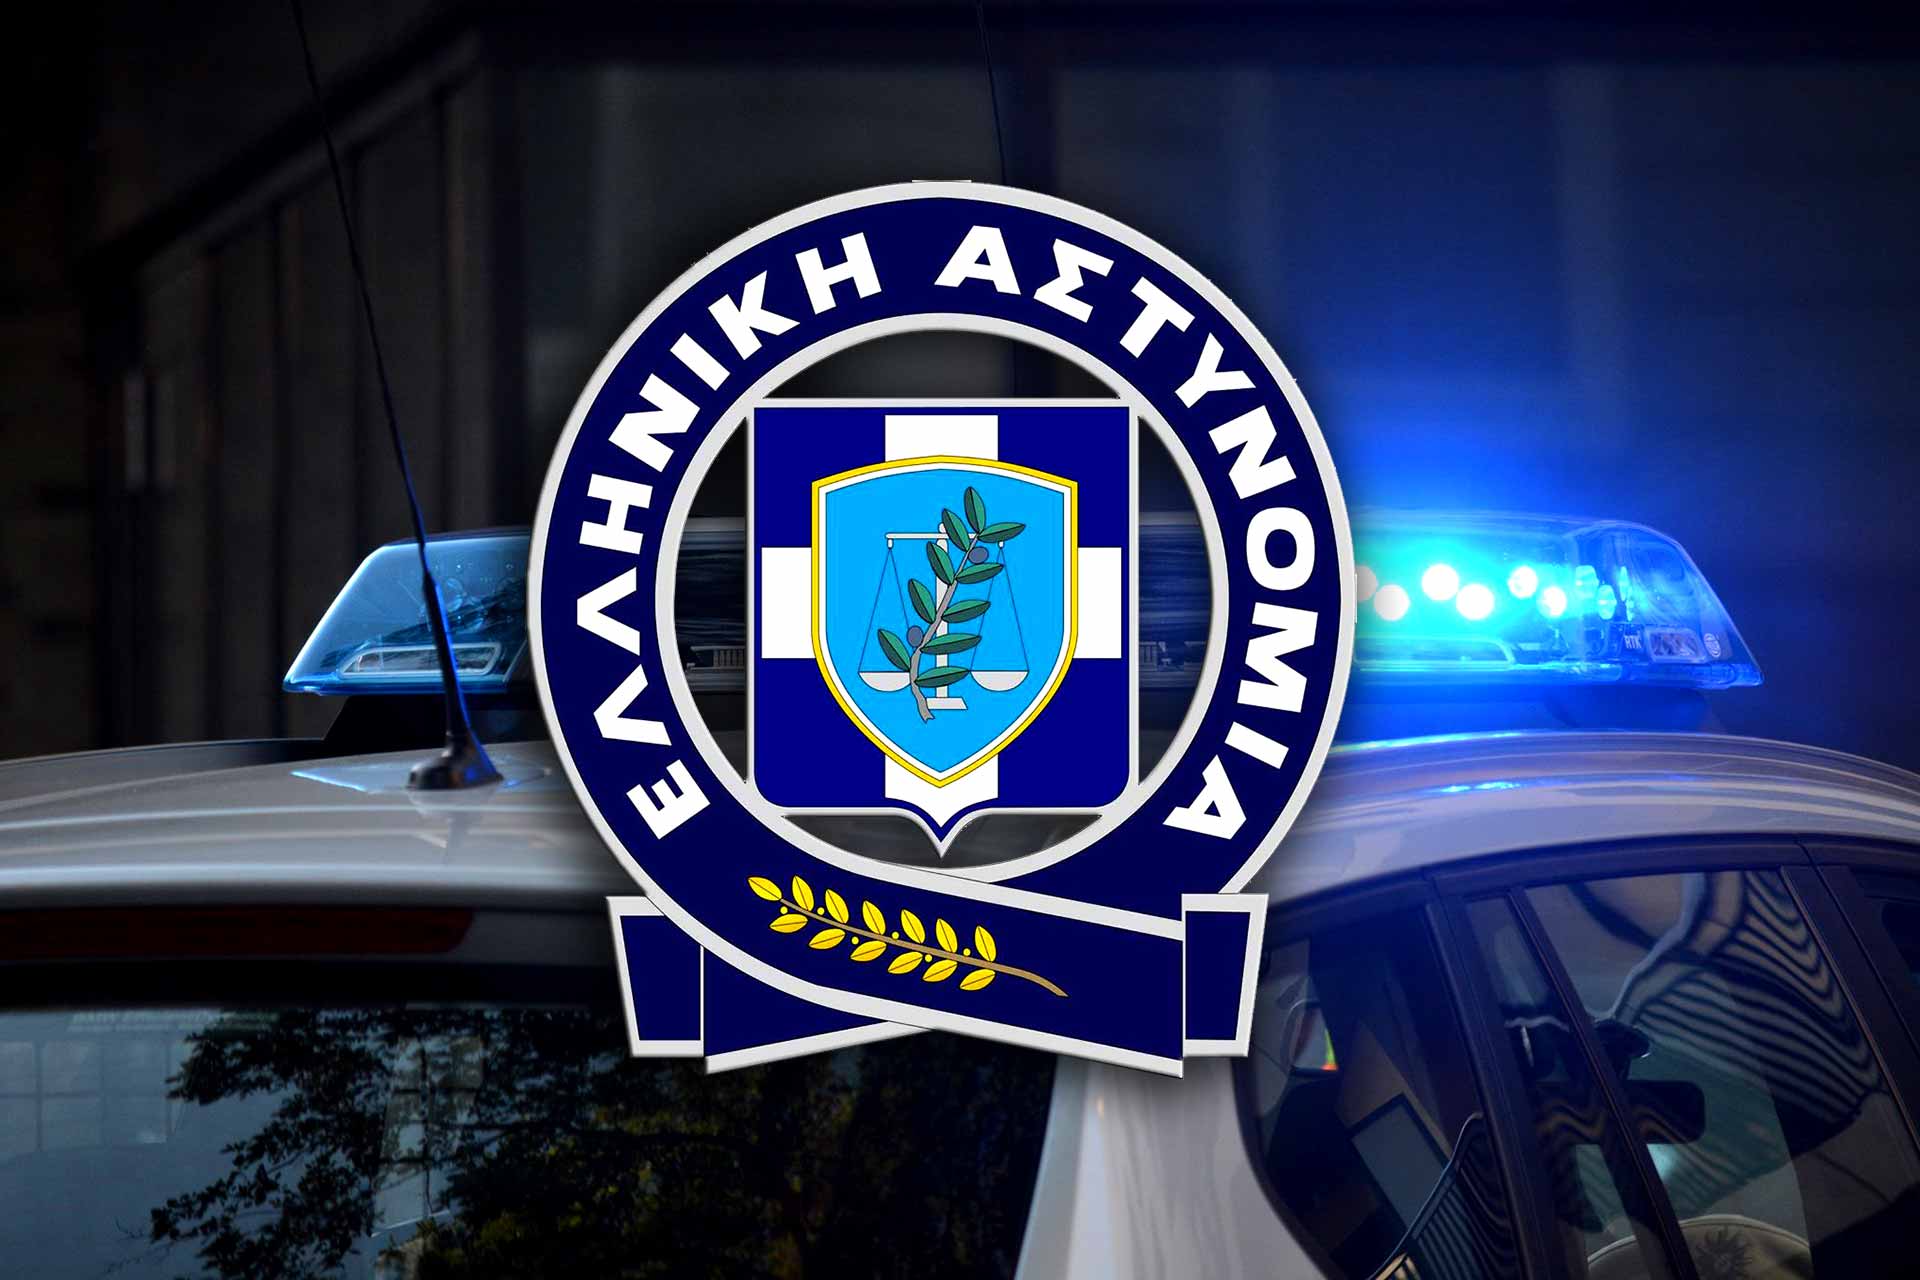 Πώς έφτασε η Αστυνομία στην εξιχνίαση των δολοφονιών στο χώρο της Greek Mafia-Τα στοιχεία που παρουσιάστηκαν στη ΓΑΔΑ